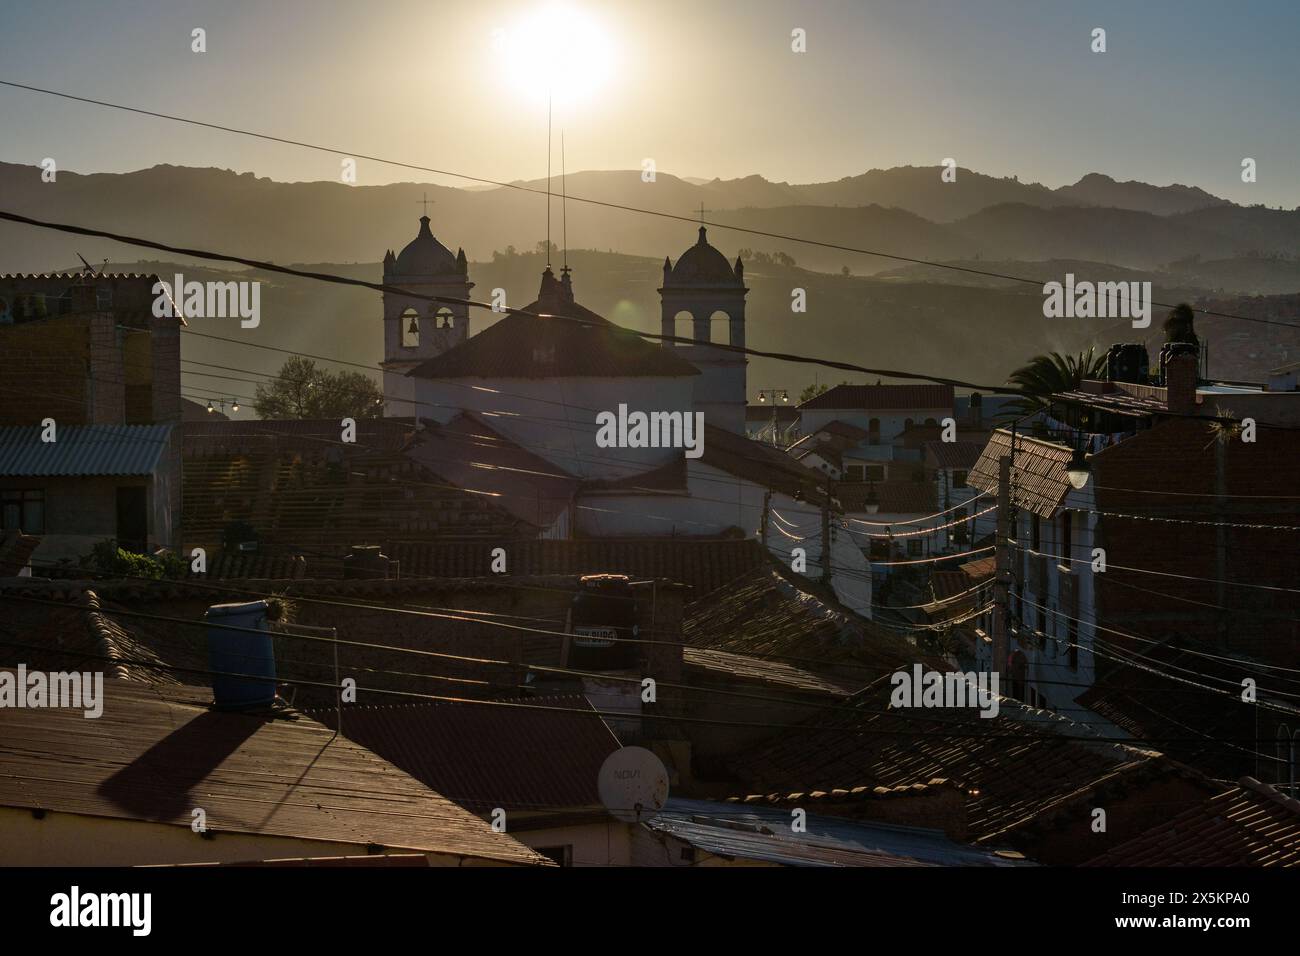 Sucre, la capitale de la Bolivie, la silhouette du monastère du XVIIe siècle de la Recoleta Santa Ana nad toits au coucher du soleil. Banque D'Images